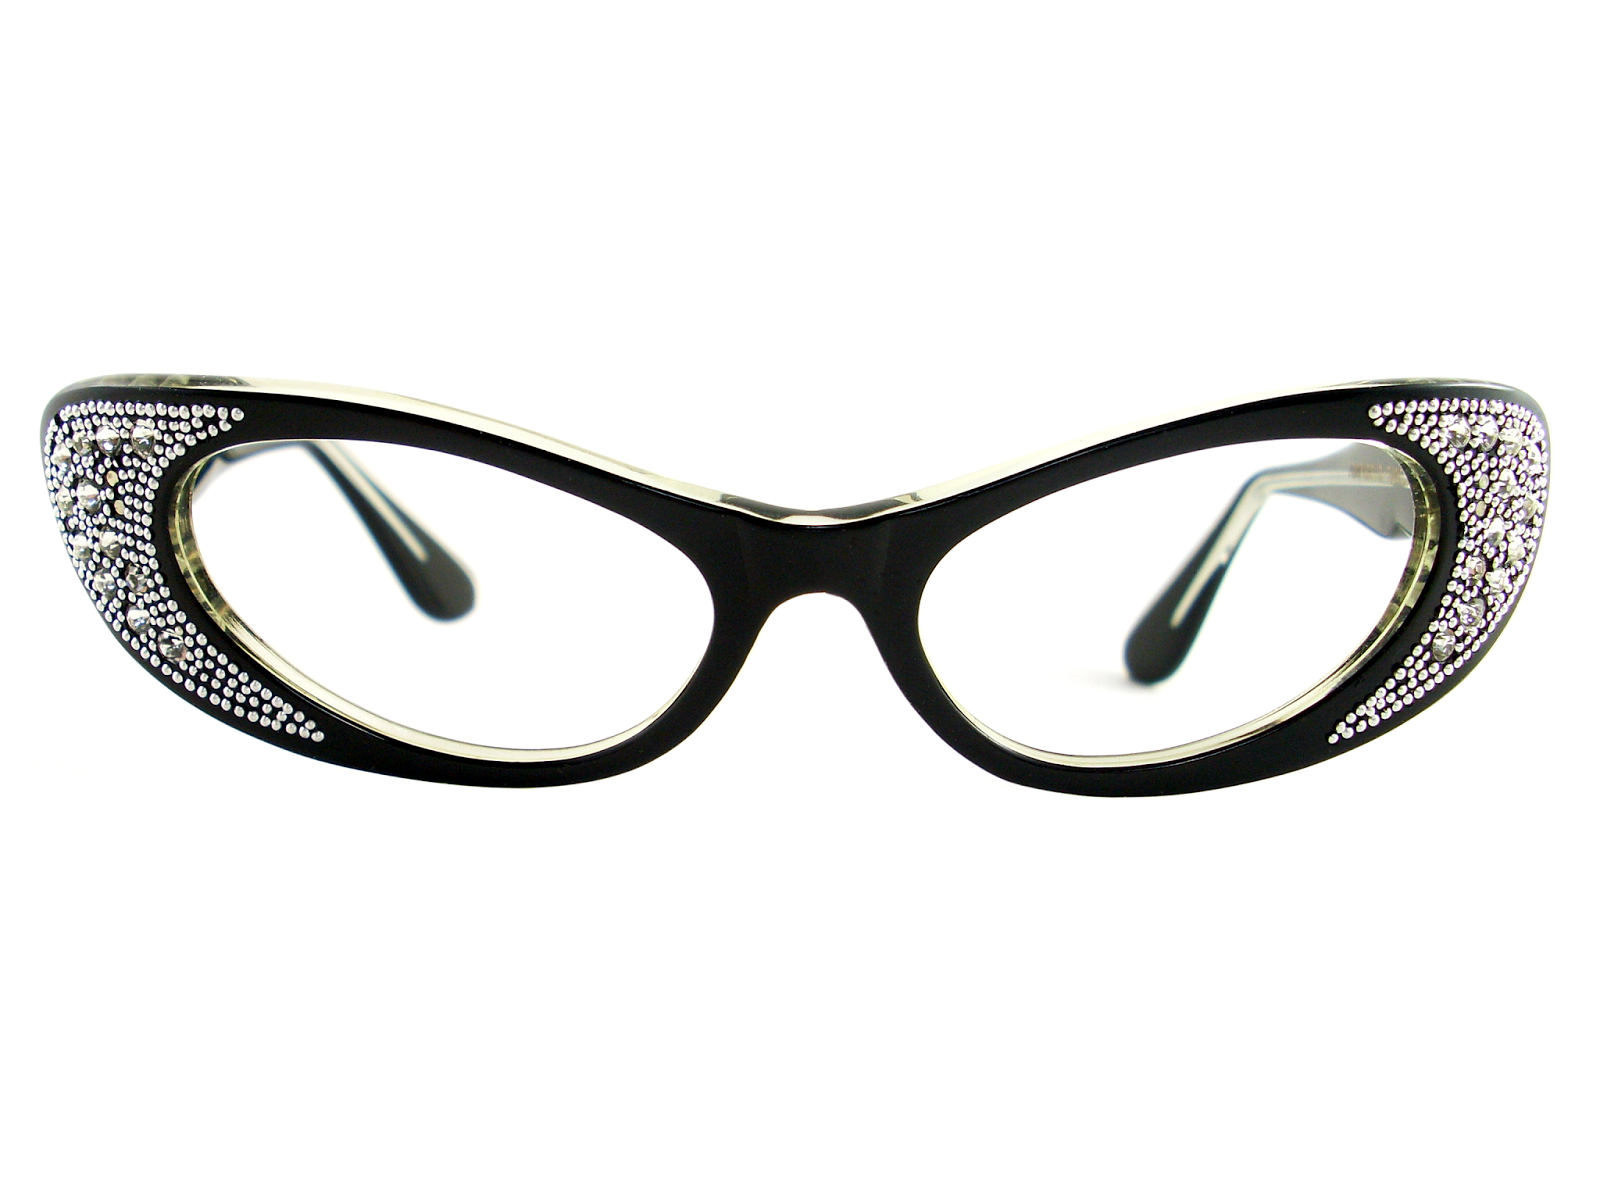 Vintage Eyeglasses Frames Eyewear Sunglasses 50S: VINTAGE BLACK CAT EYE ...